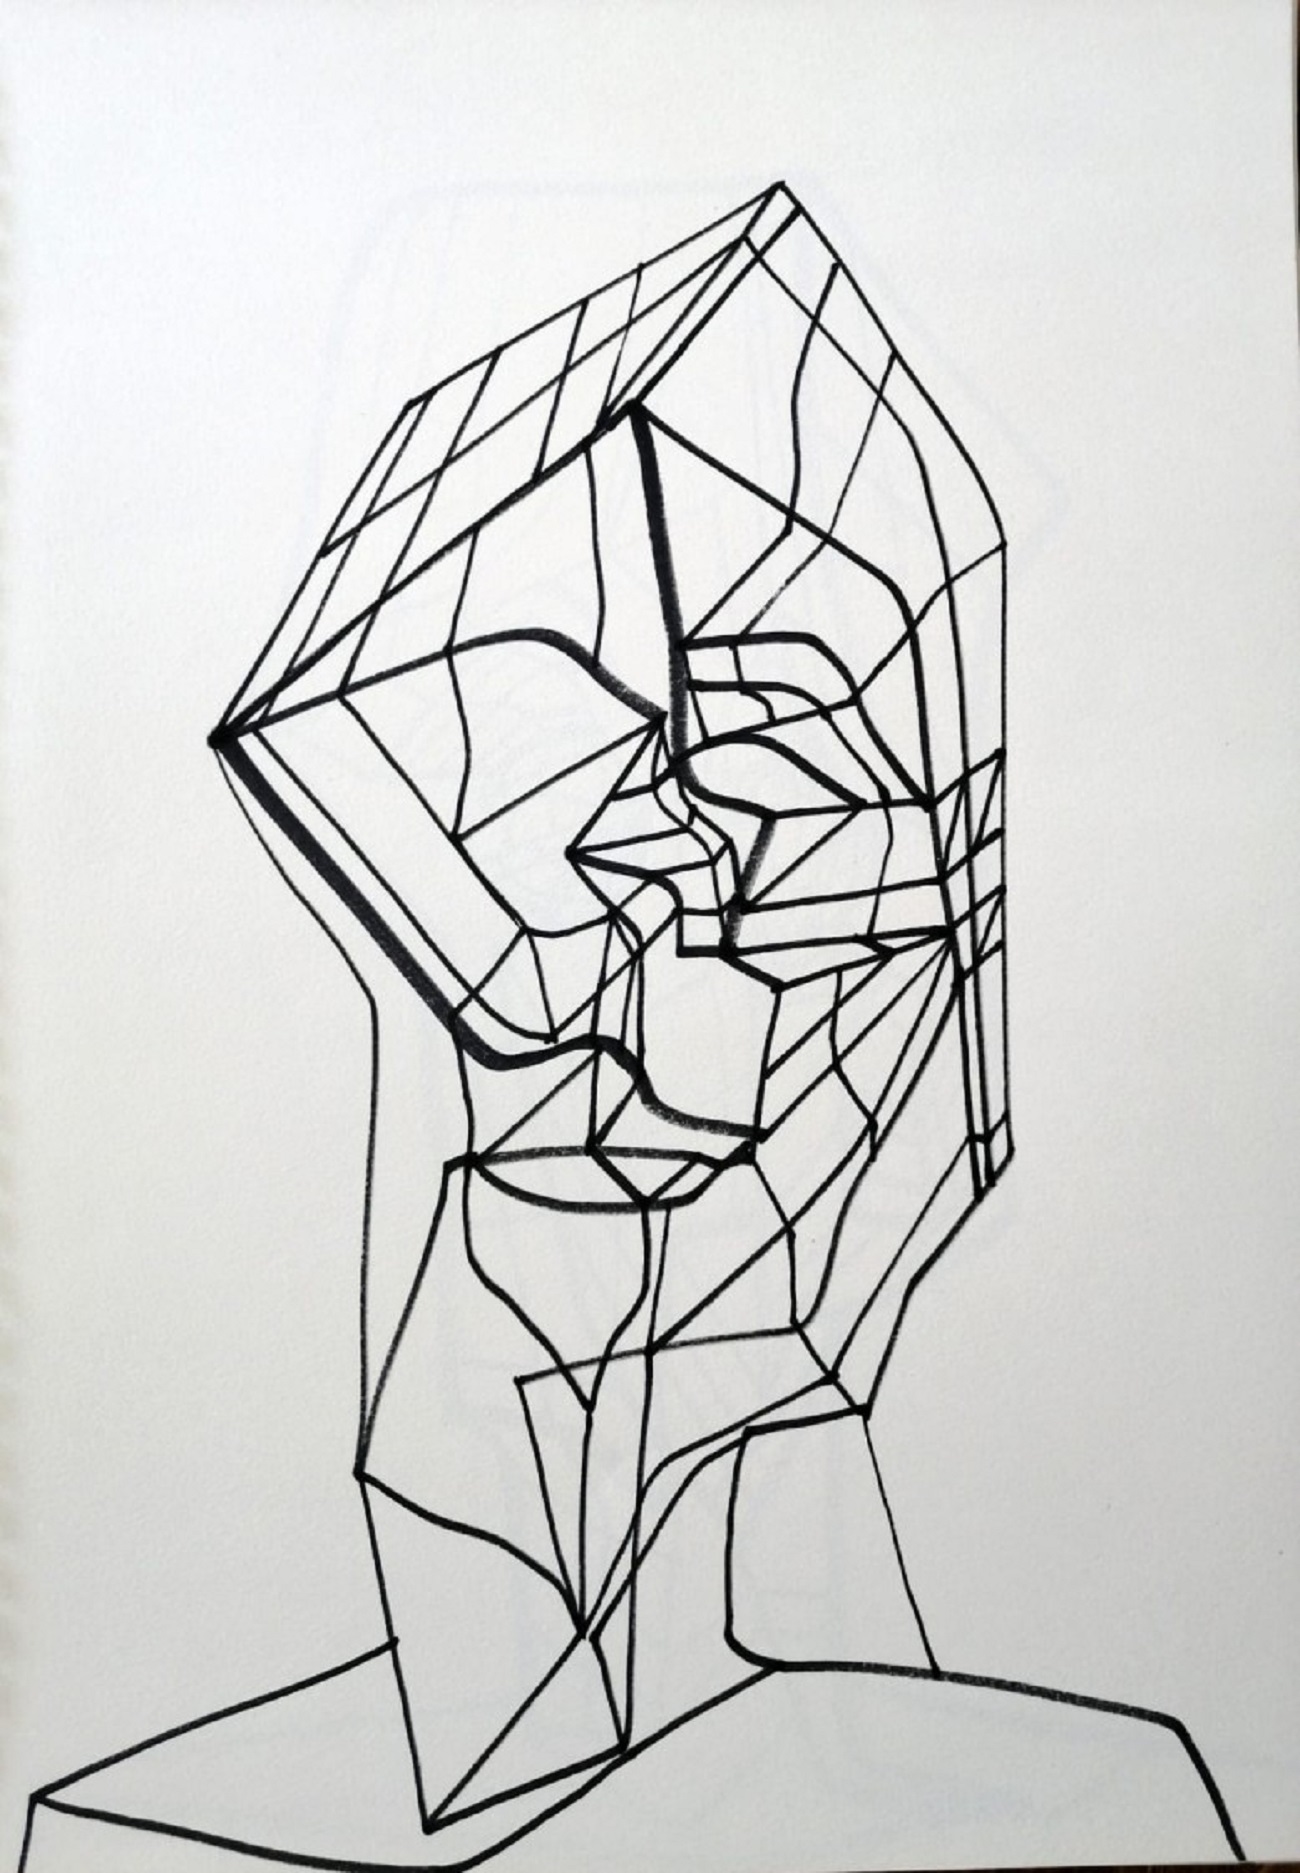 lucian sandu milea, untitled ii, ink on paper, 30x40cm